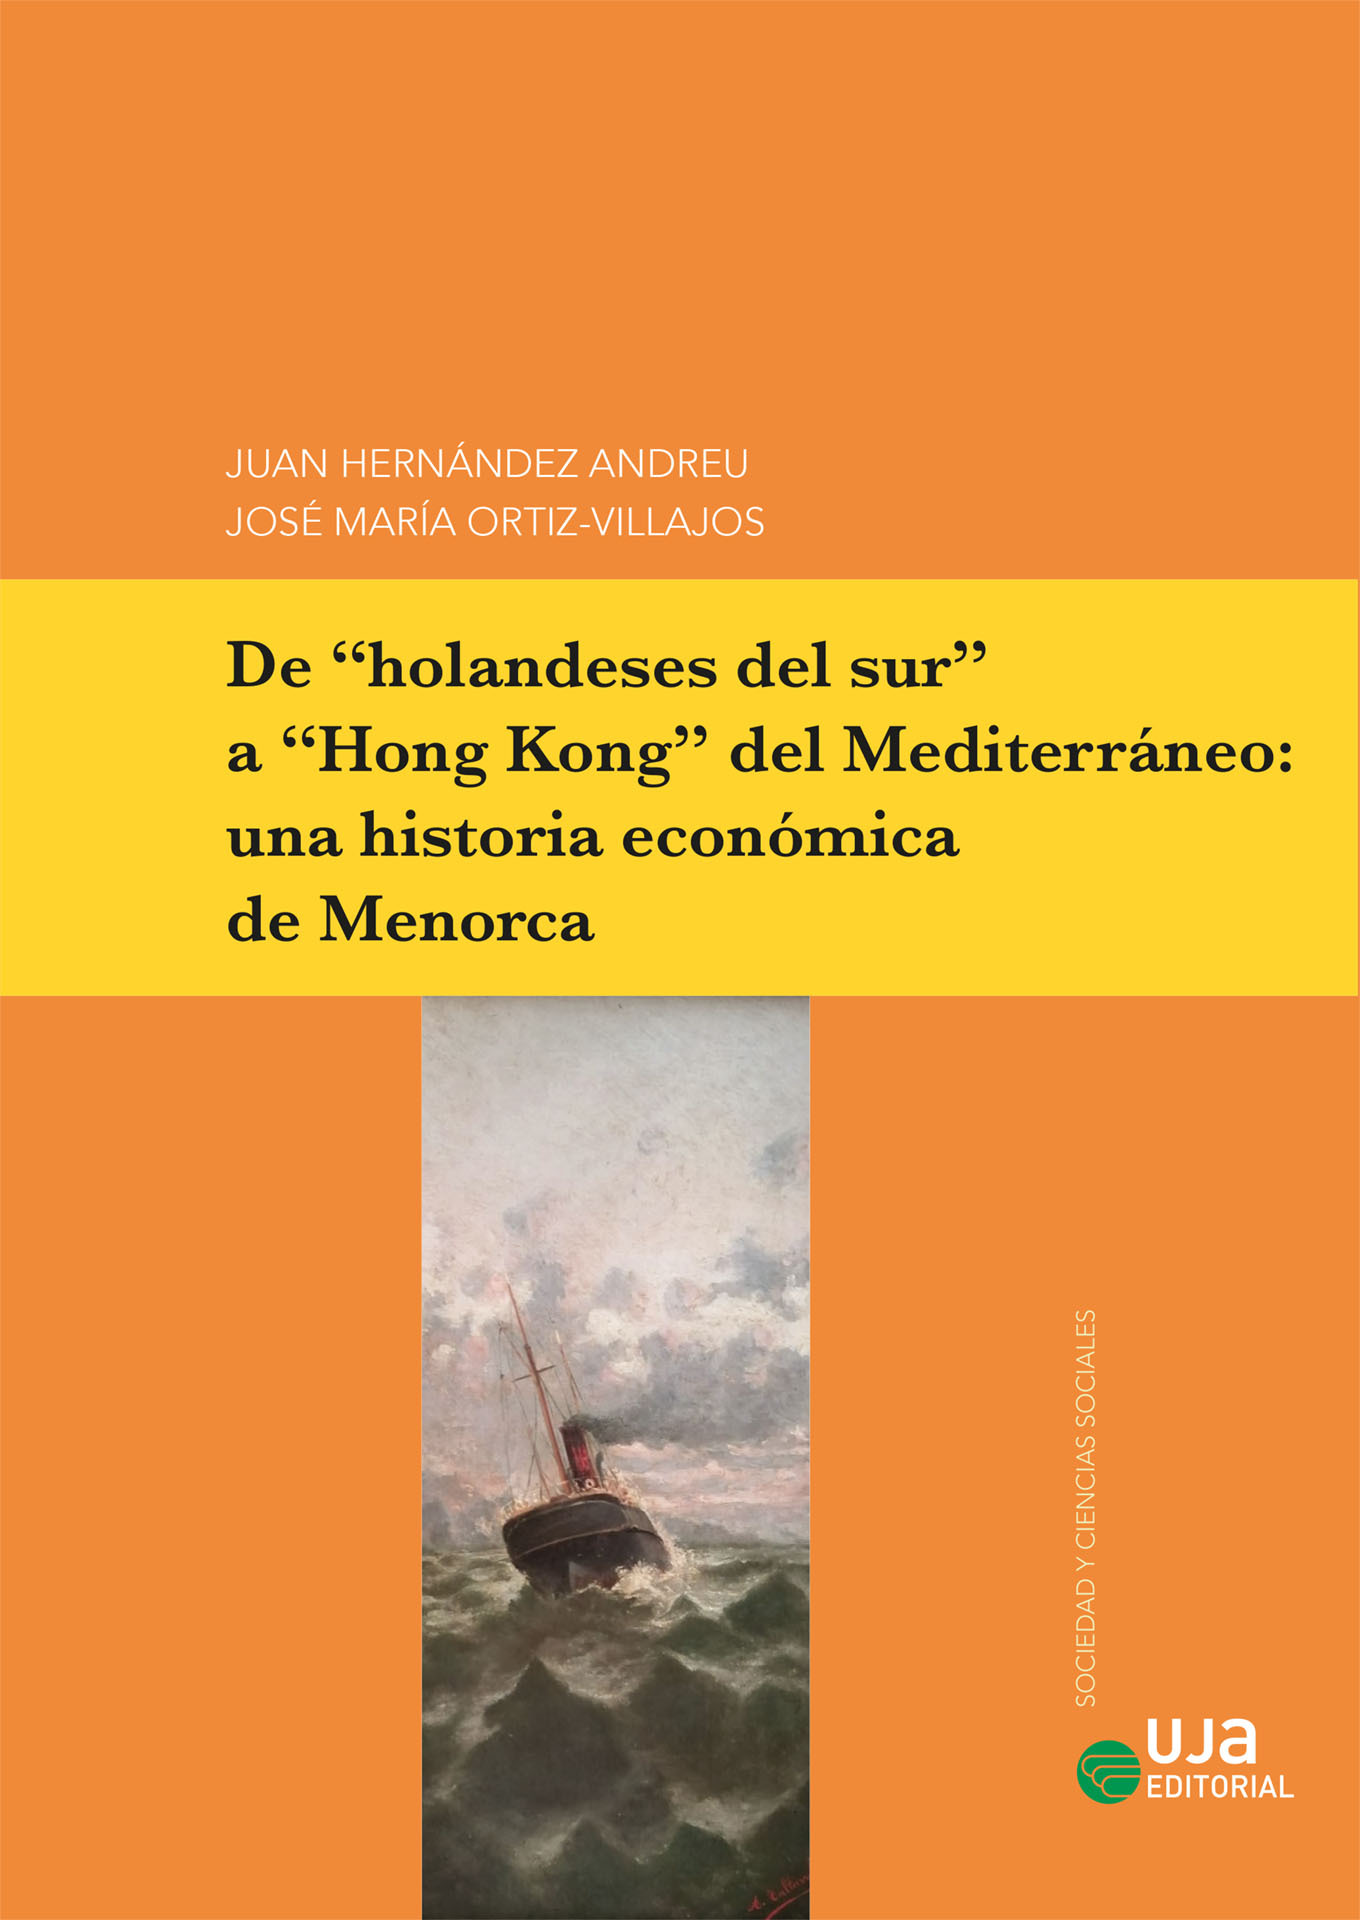 Imagen de portada del libro De "holandeses del sur" a "Hong Kong" del Mediterráneo